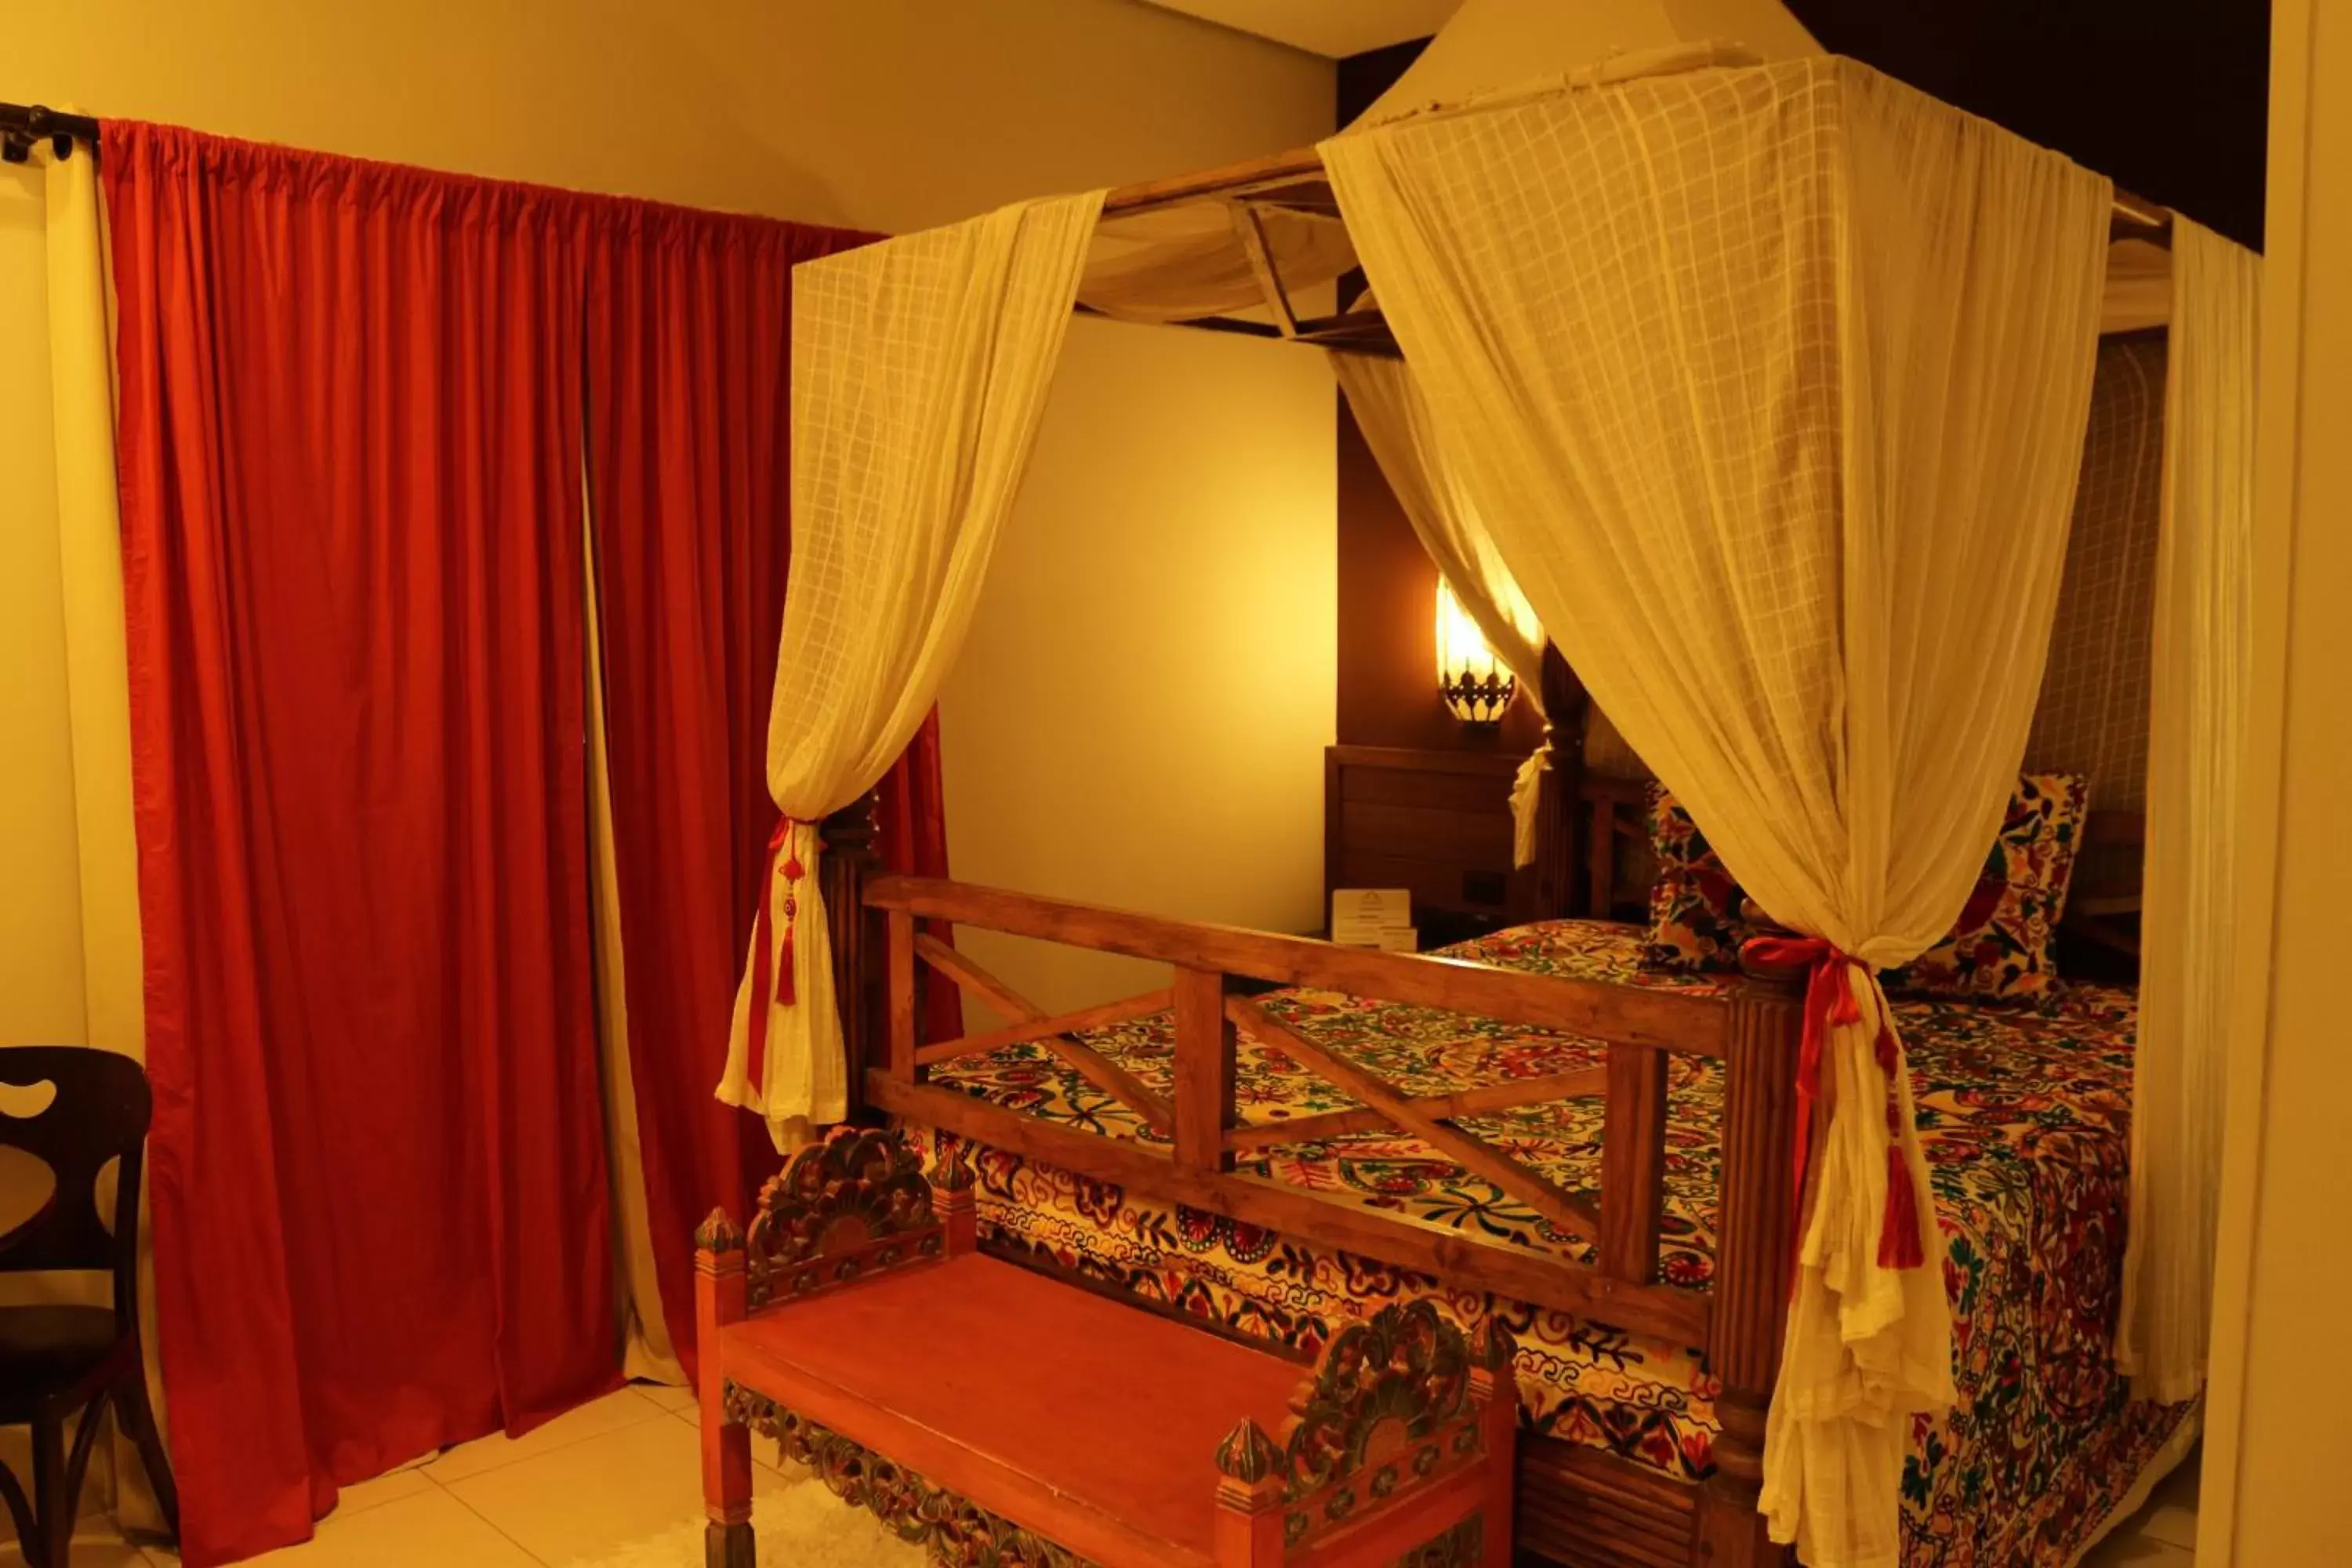 Bed in Taj Hotel